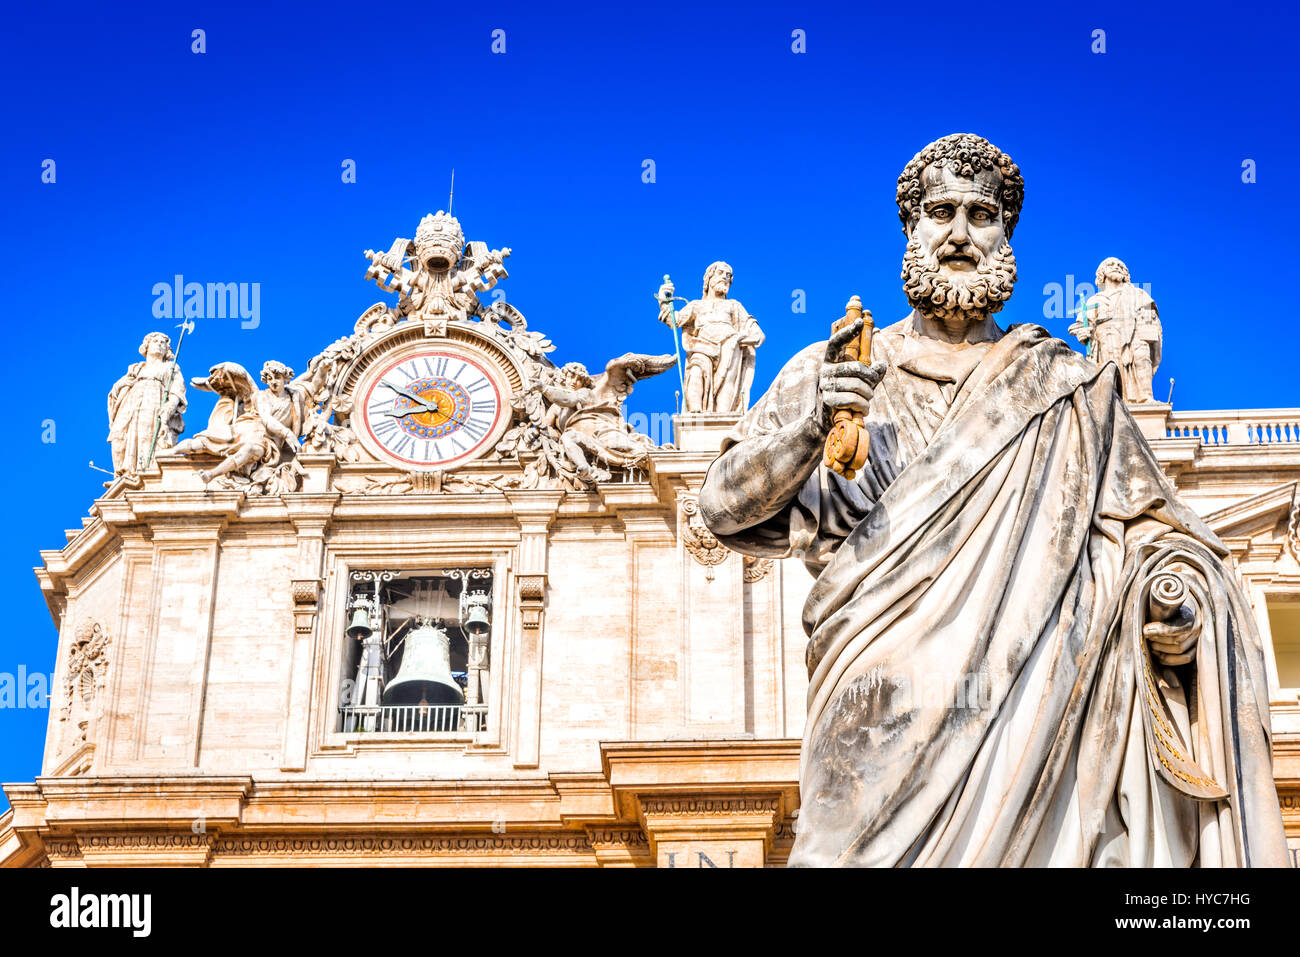 Cité du Vatican, Rome, Italie. Statue de Saint Pierre et la Basilique Saint Pierre à l'arrière-plan dans la place Saint Pierre. Banque D'Images